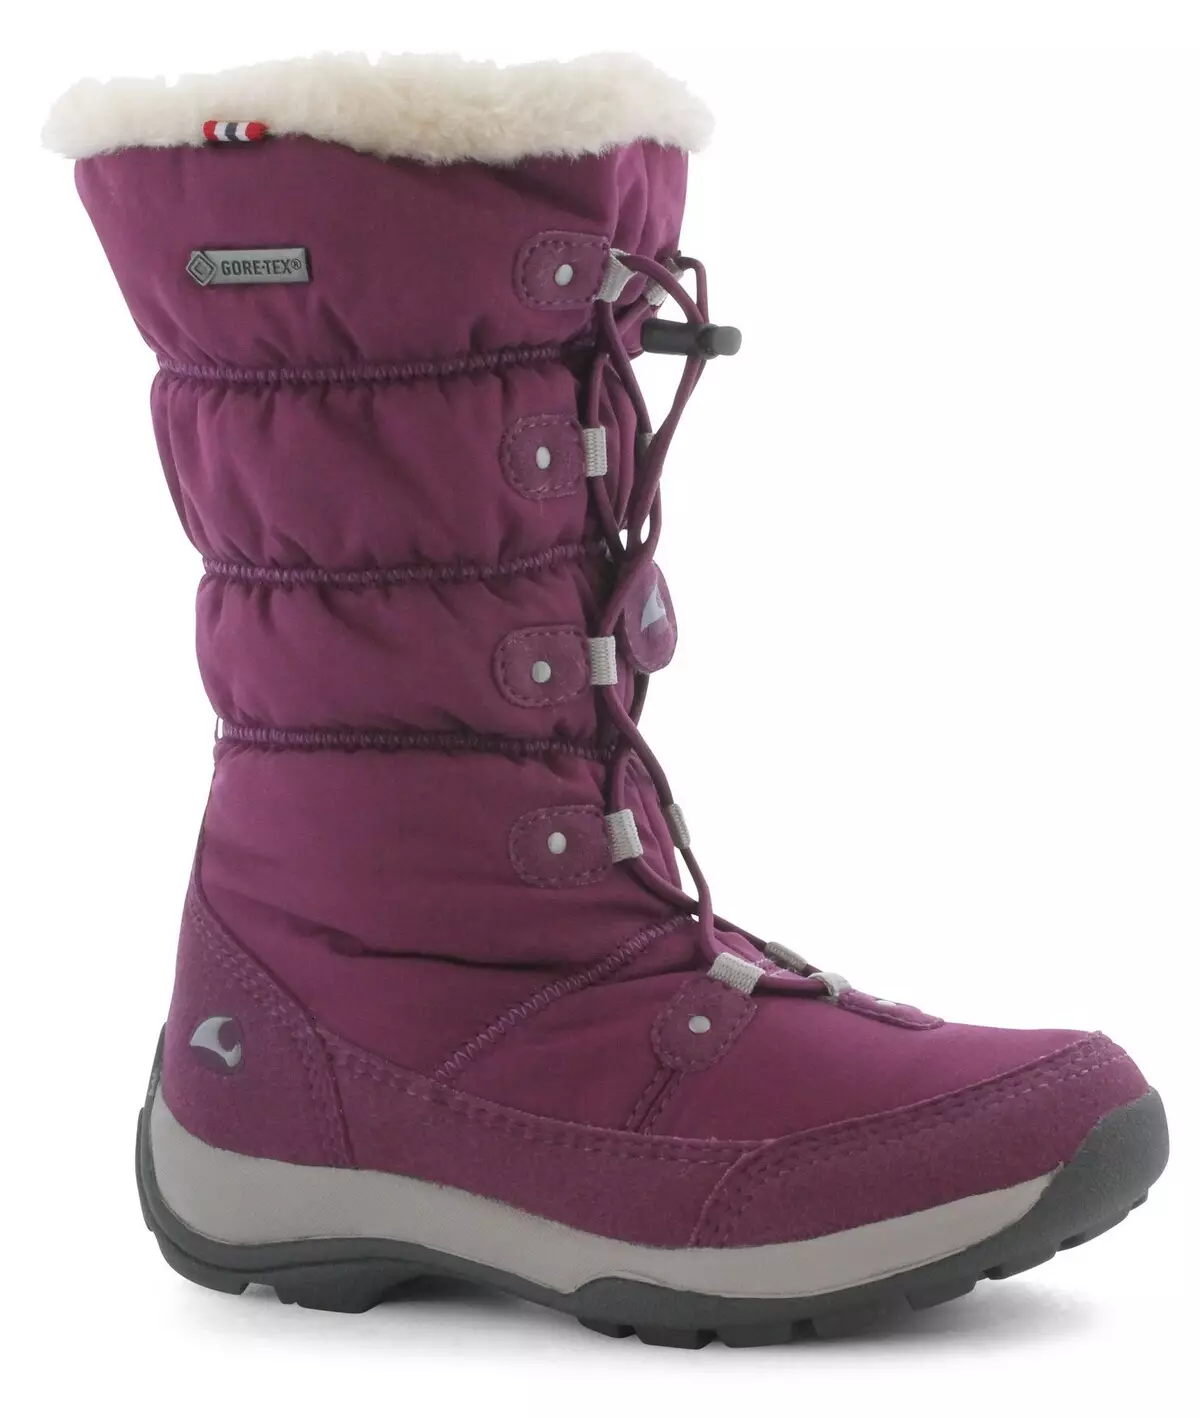 Wikigi Boots (73 fotos): modelos de poliuretano infantil e mulleres de inverno, malla dimensional e comentarios viking 2258_25